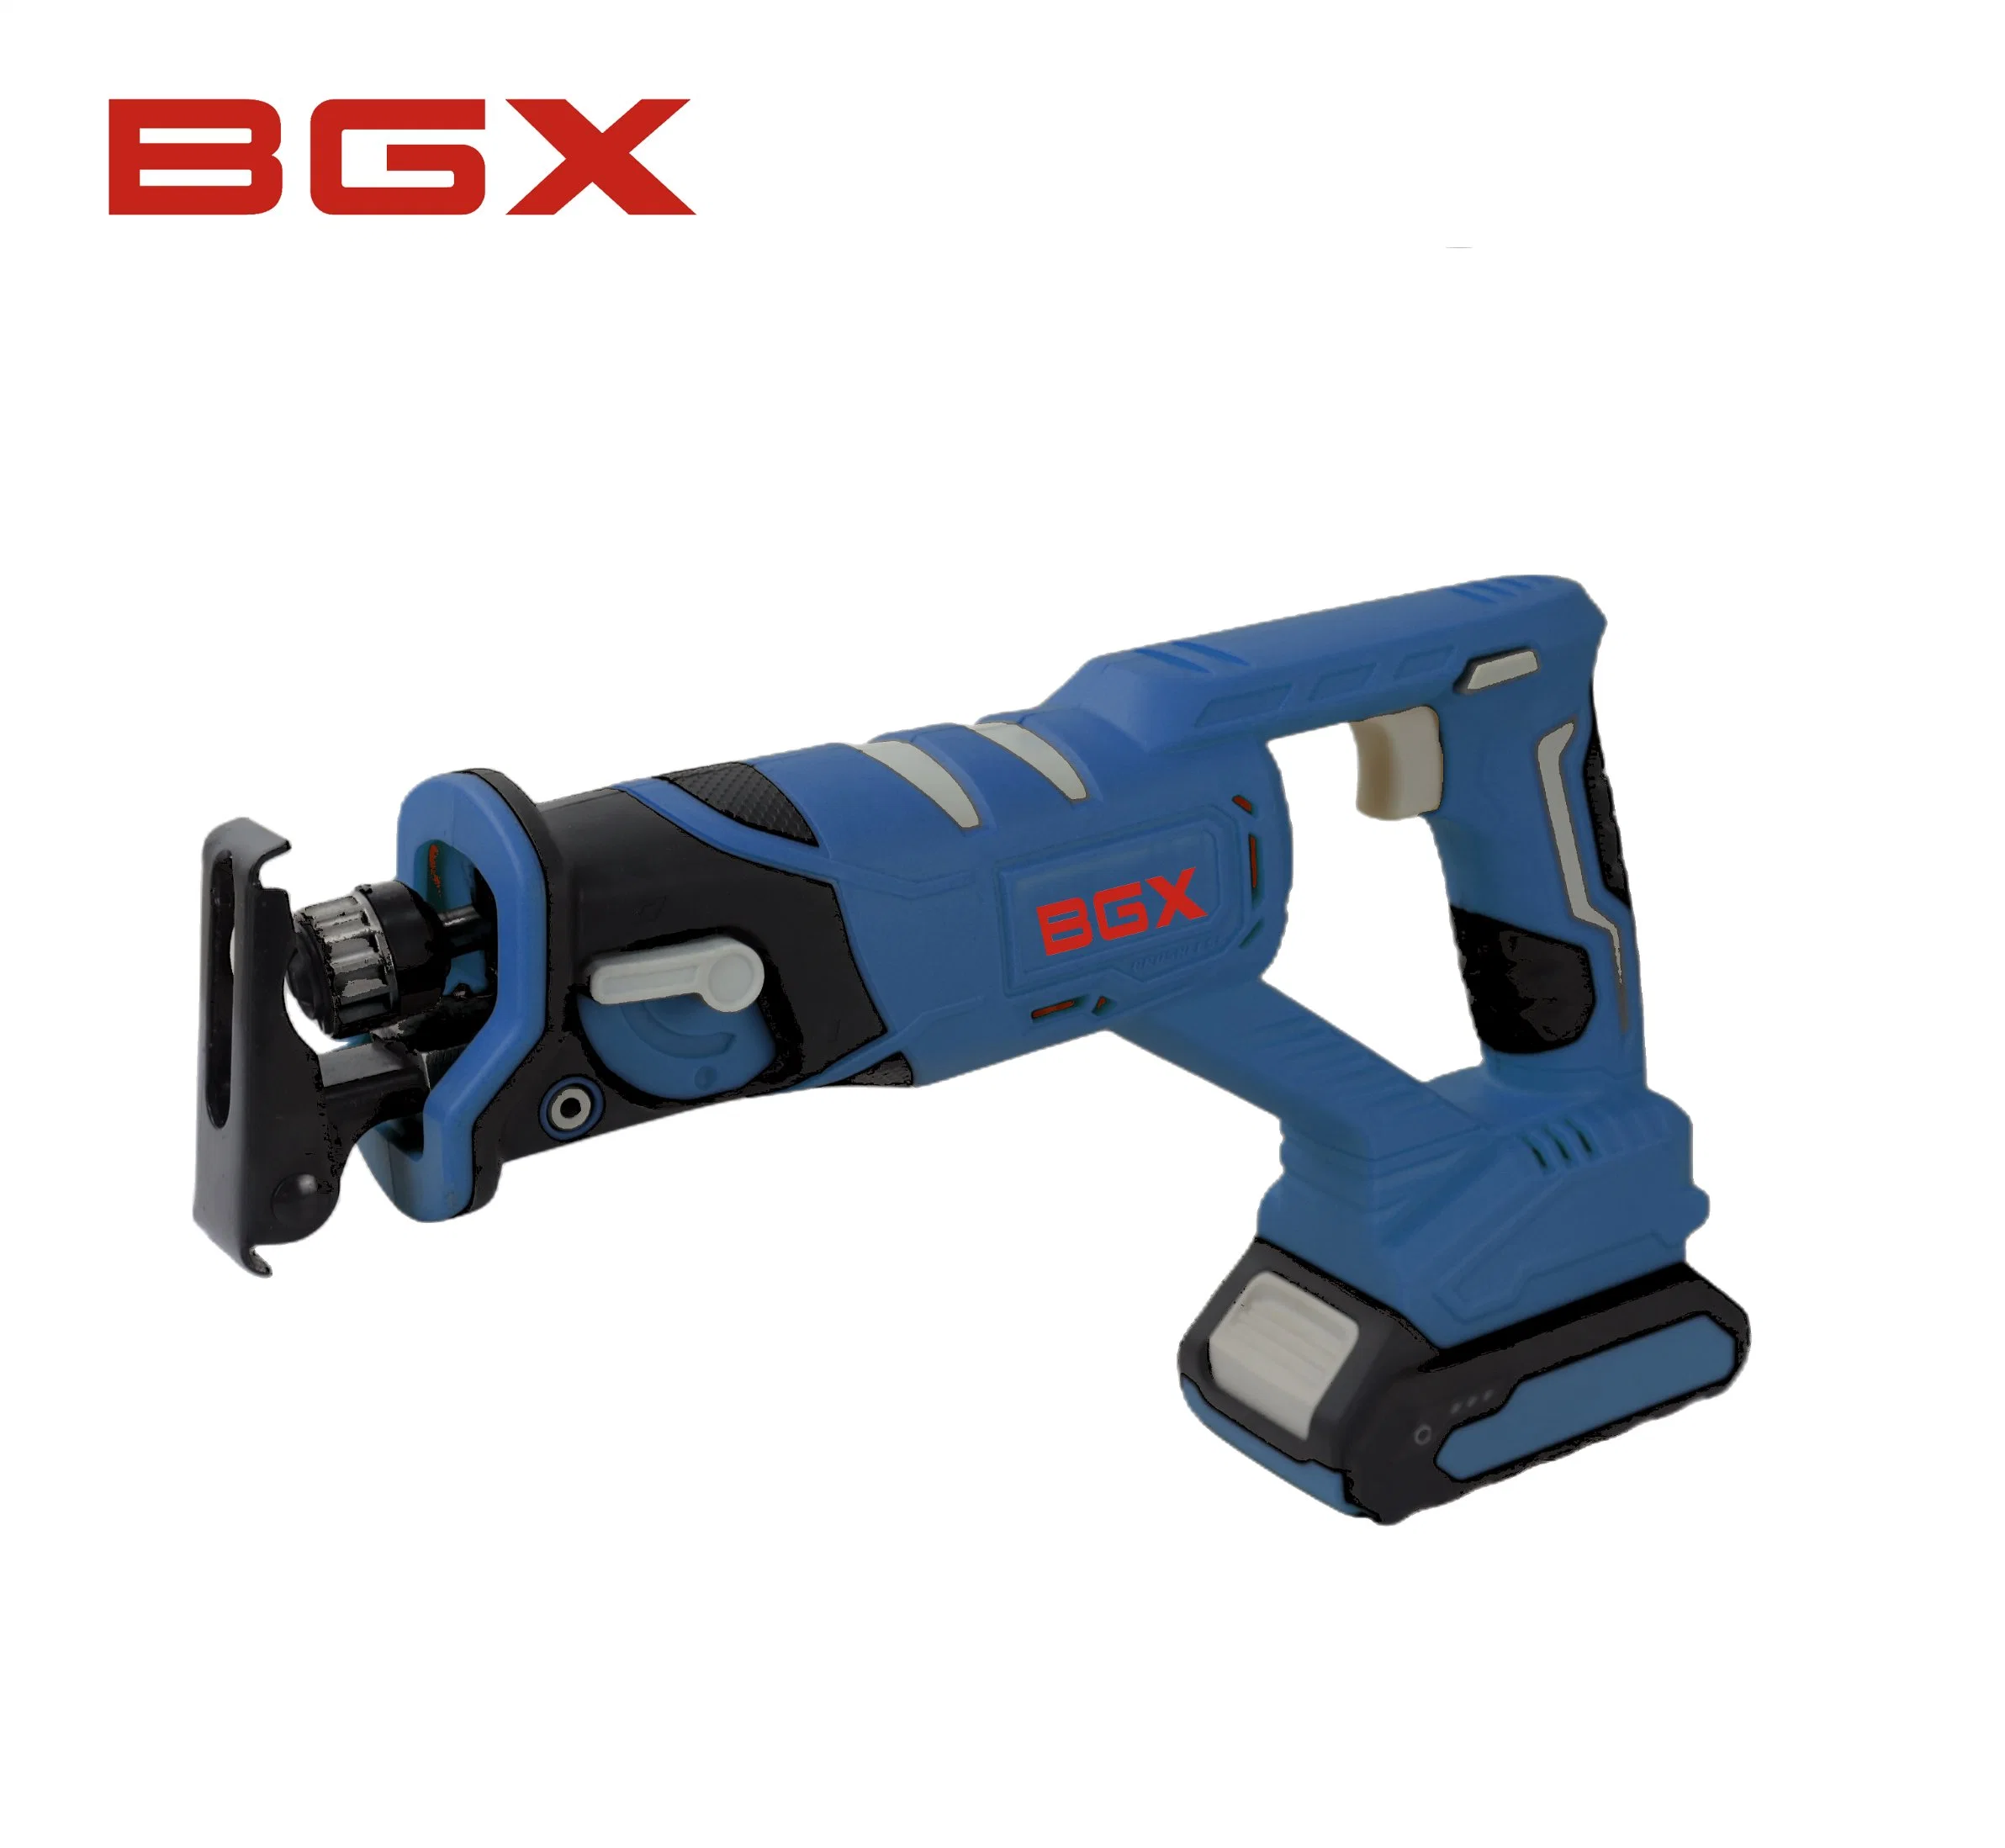 BGX 20V sin escobillas sin cable eléctrico de la herramienta de jardín bricolaje sierra oscilante